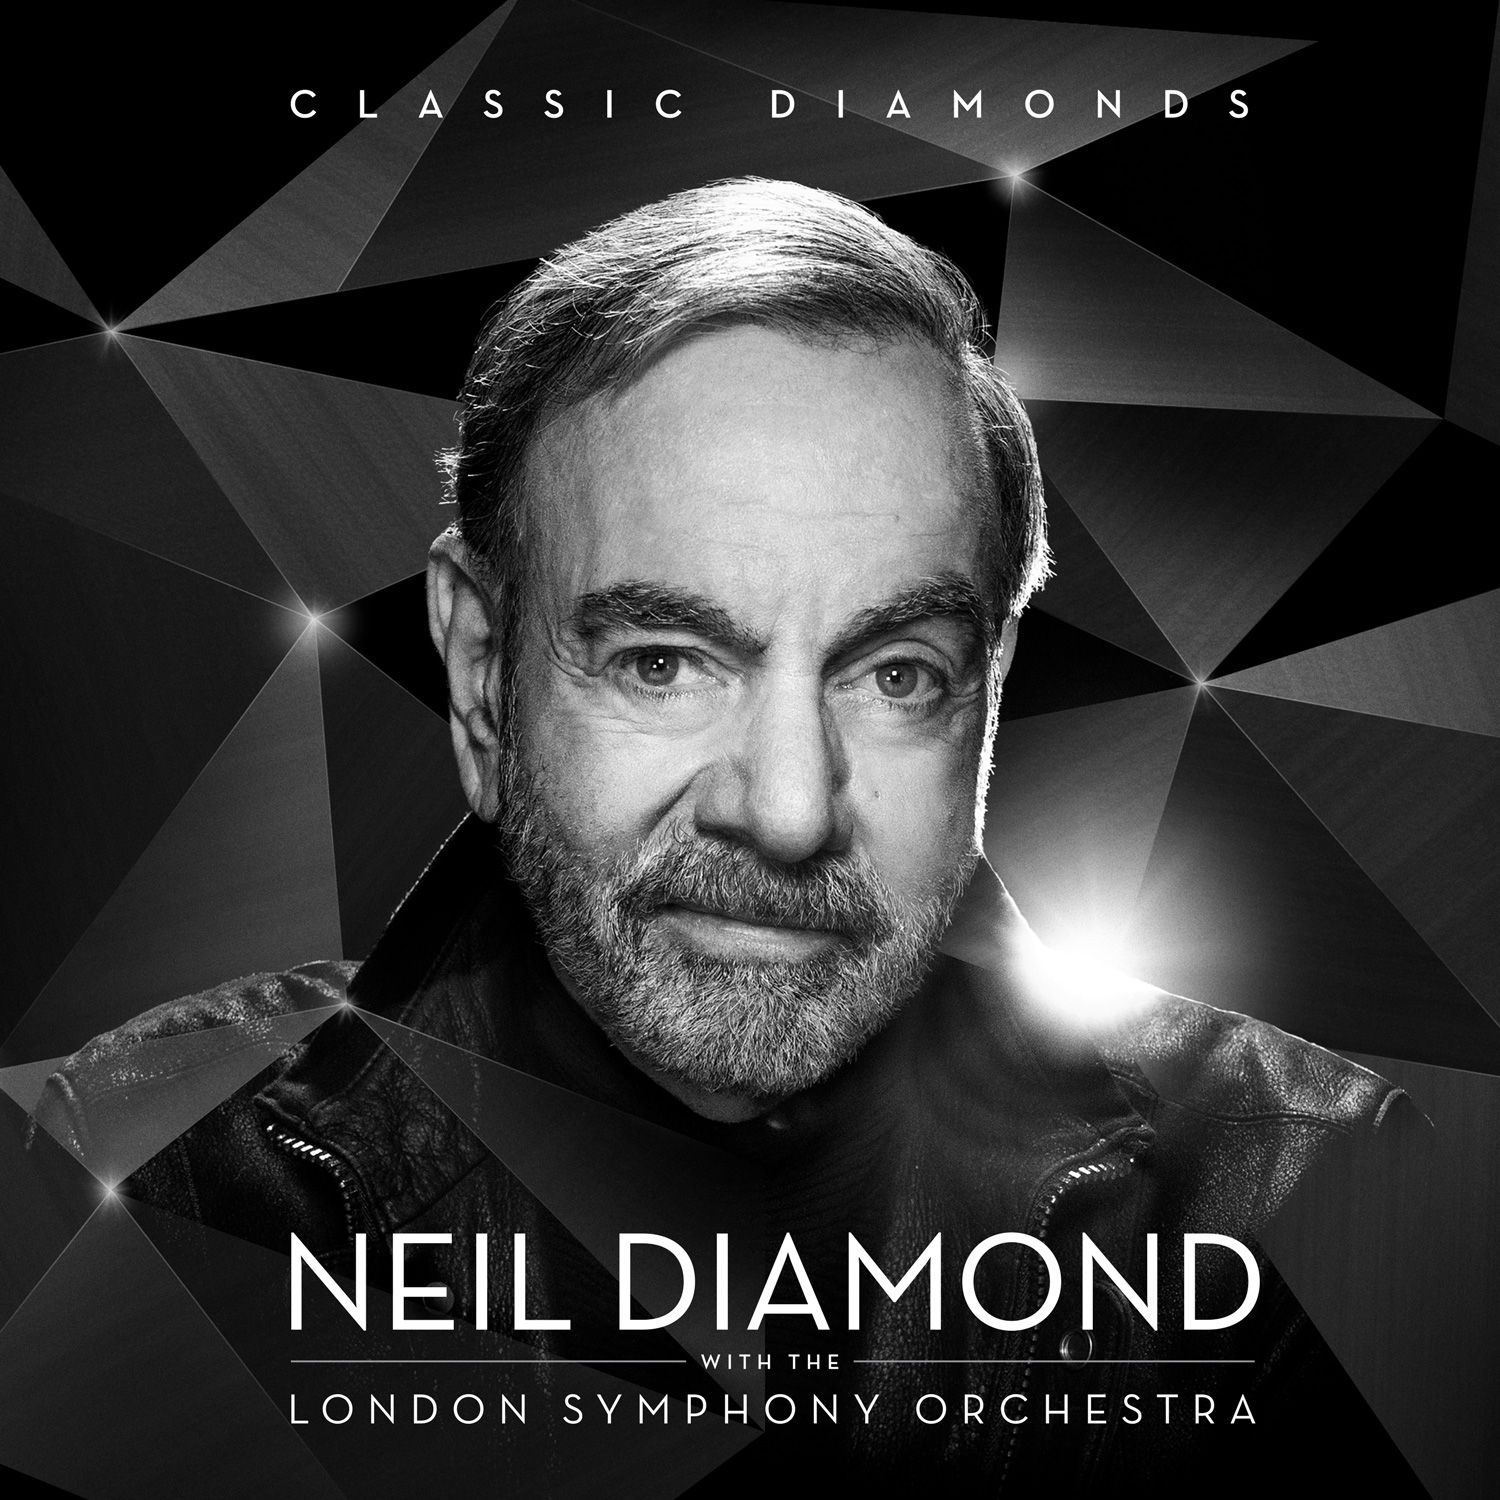 This is Neil Diamond Neil Diamond